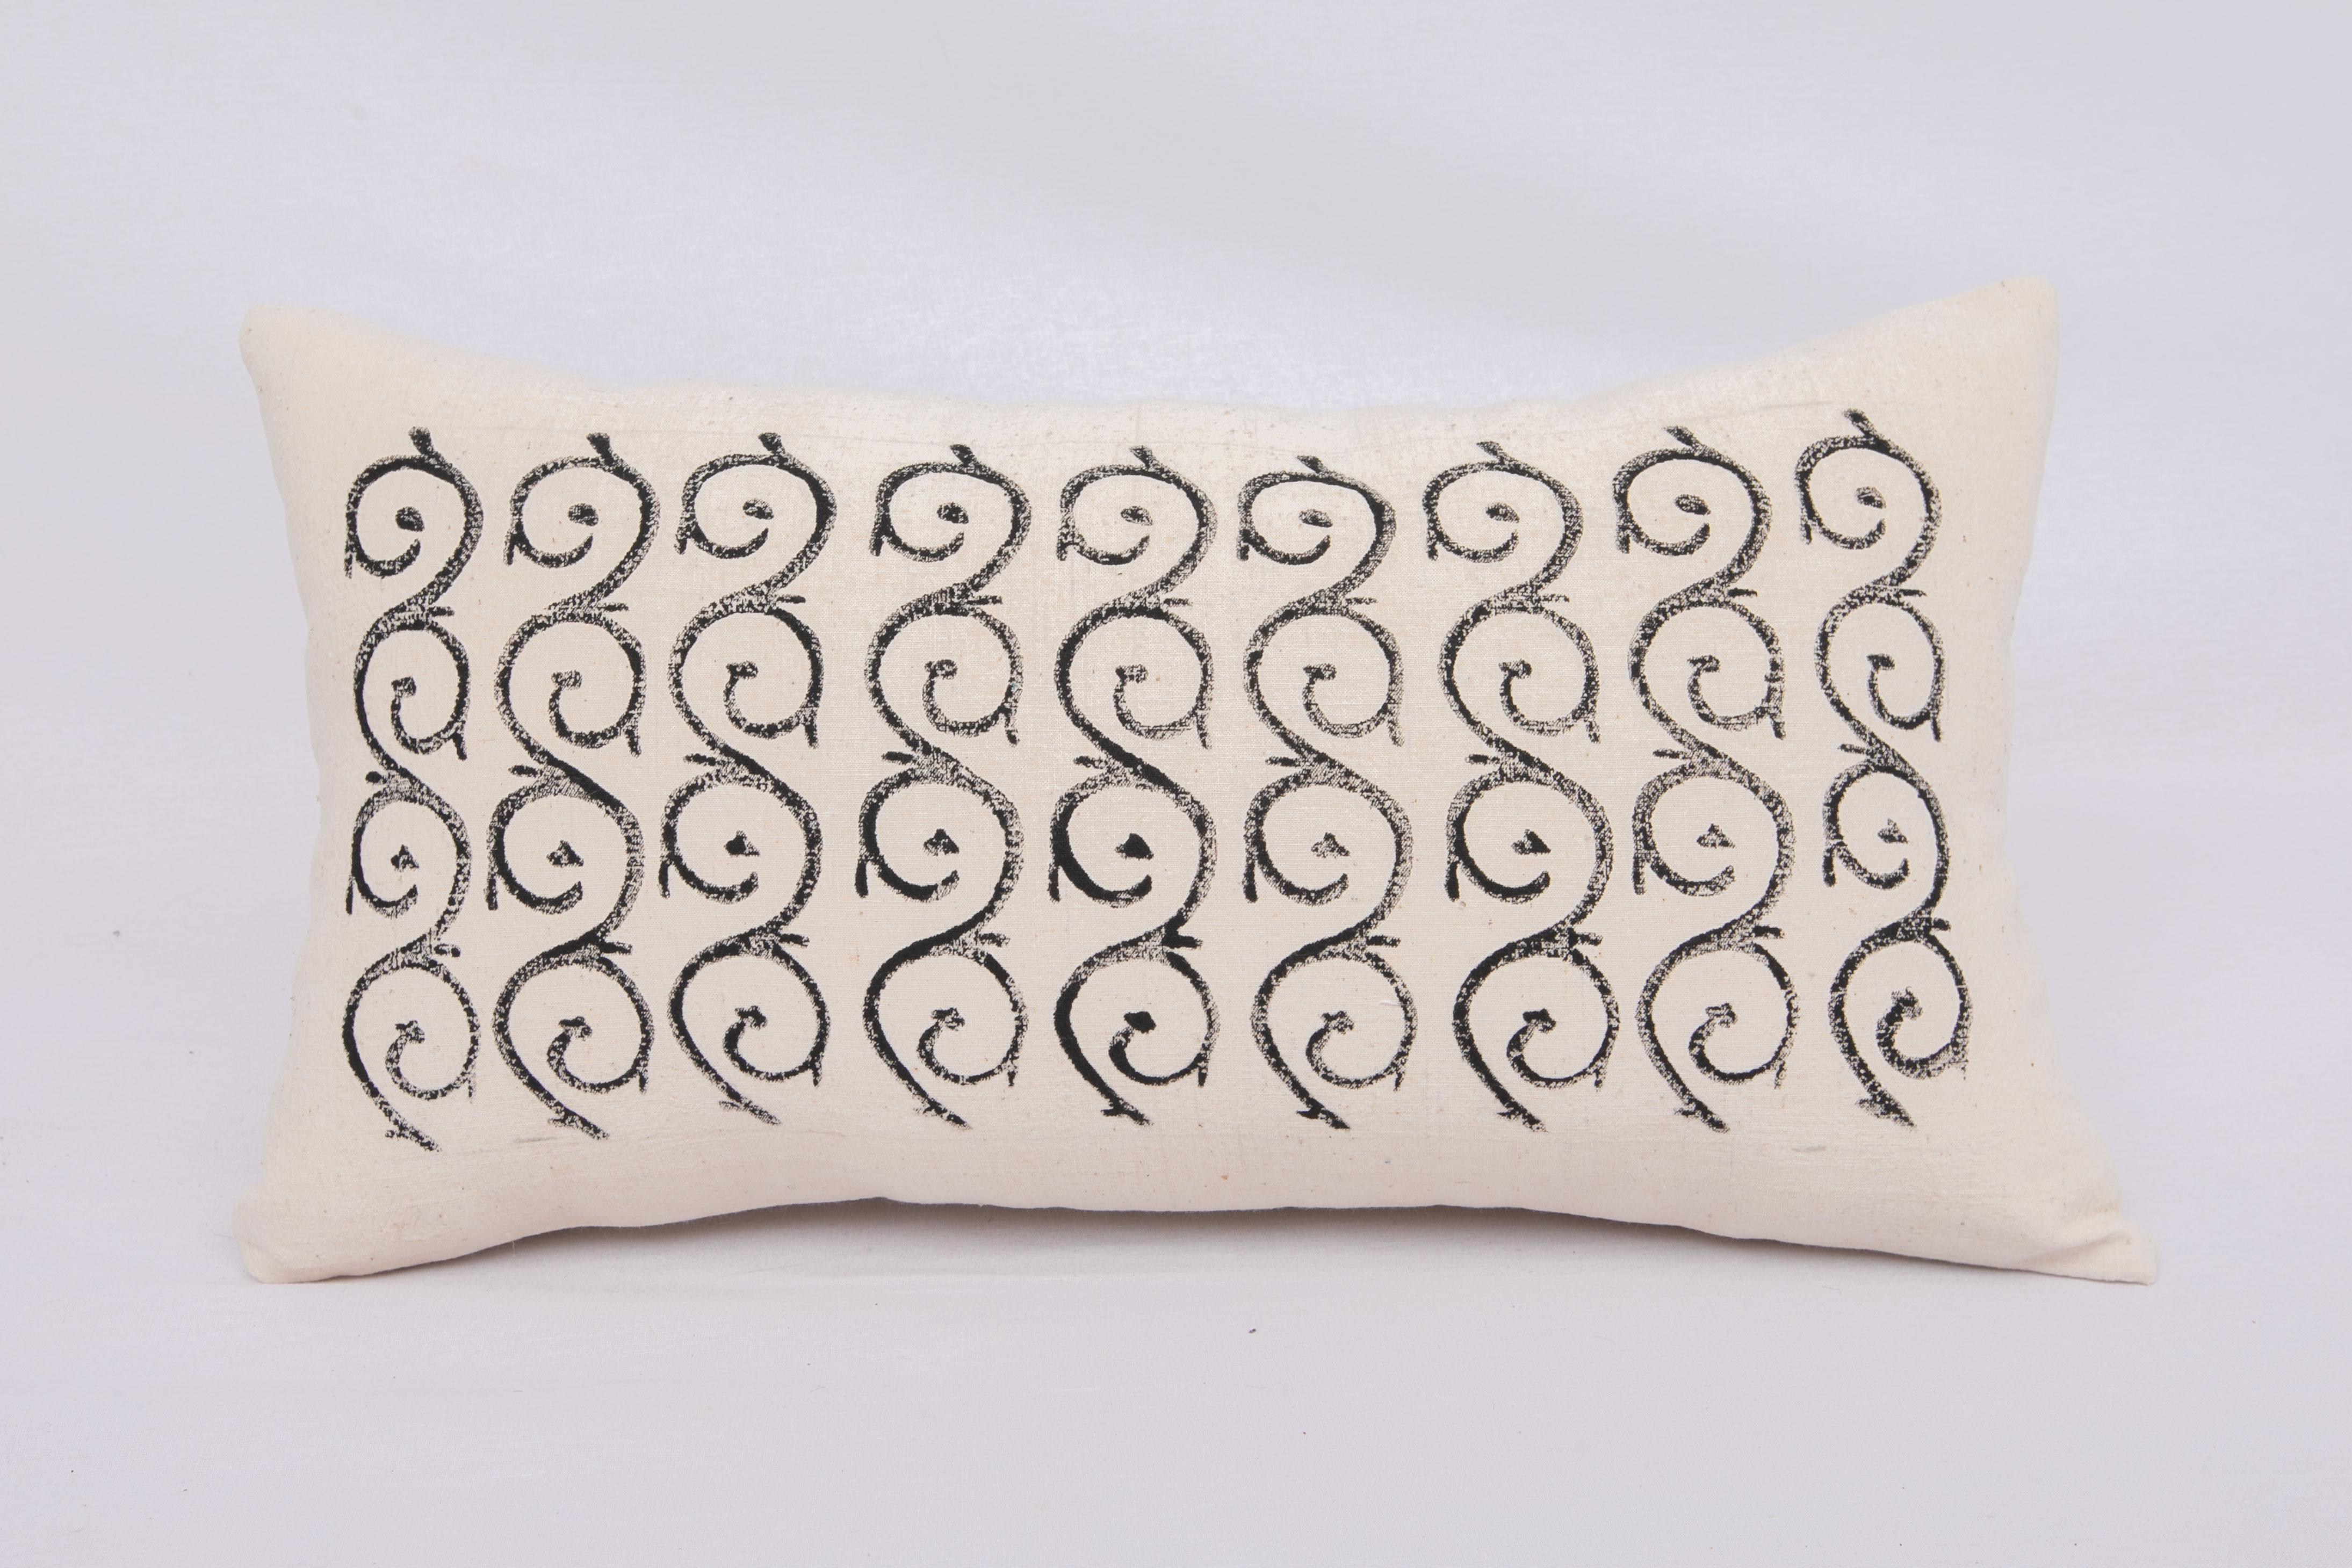 De vieux blocs anatoliens originaux ont été utilisés pour imprimer ces motifs sur un tissu de coton vintage tissé à la main.
Il n'est pas livré avec un insert mais avec un sac dont la taille est adaptée aux matériaux de l'insert.
Coton dans le